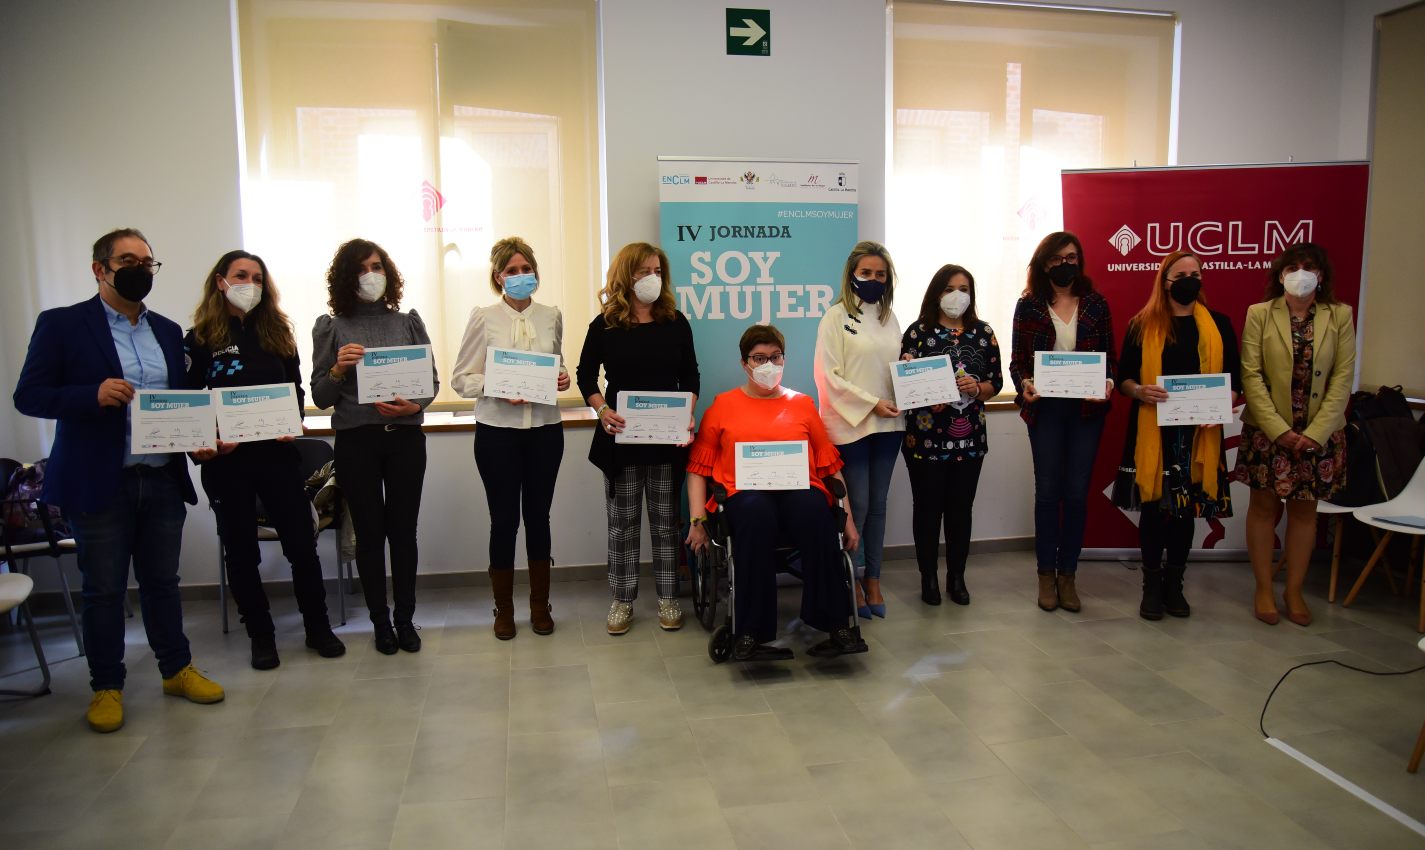 Imagen de las participantes de la IV Jornada "Soy Mujer" que ha organizado encastillalamancha.es en la UCLM.